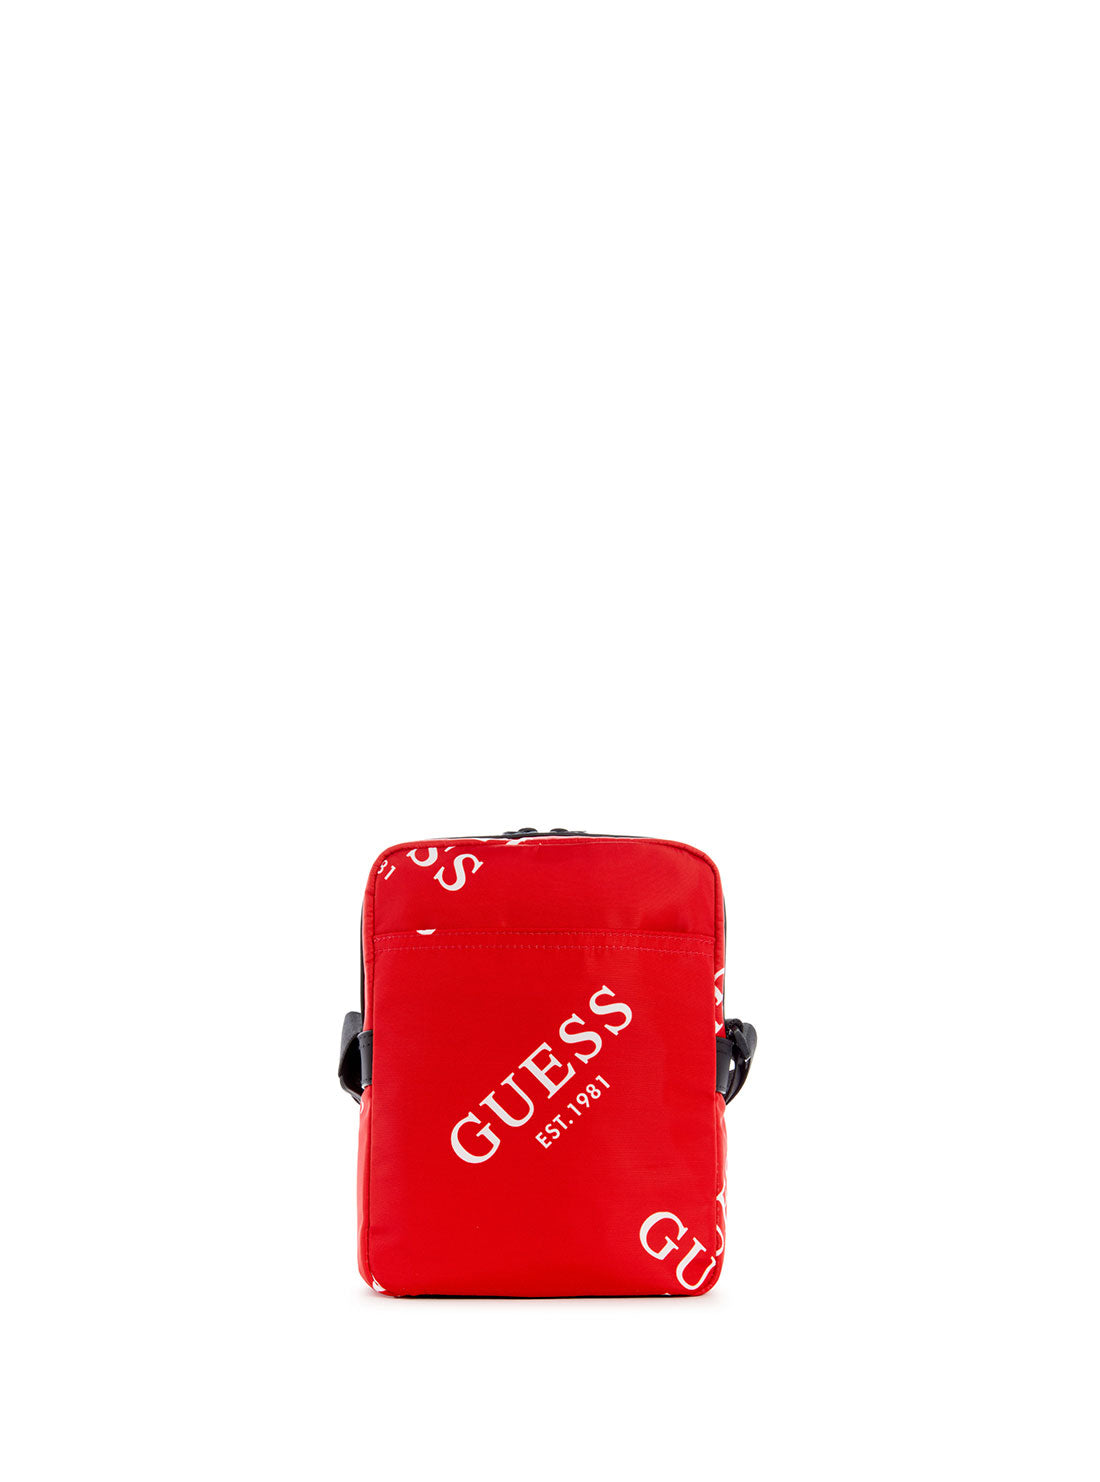 GUESS Men's Red Originals Logo Camera Bag TL703191 Back View